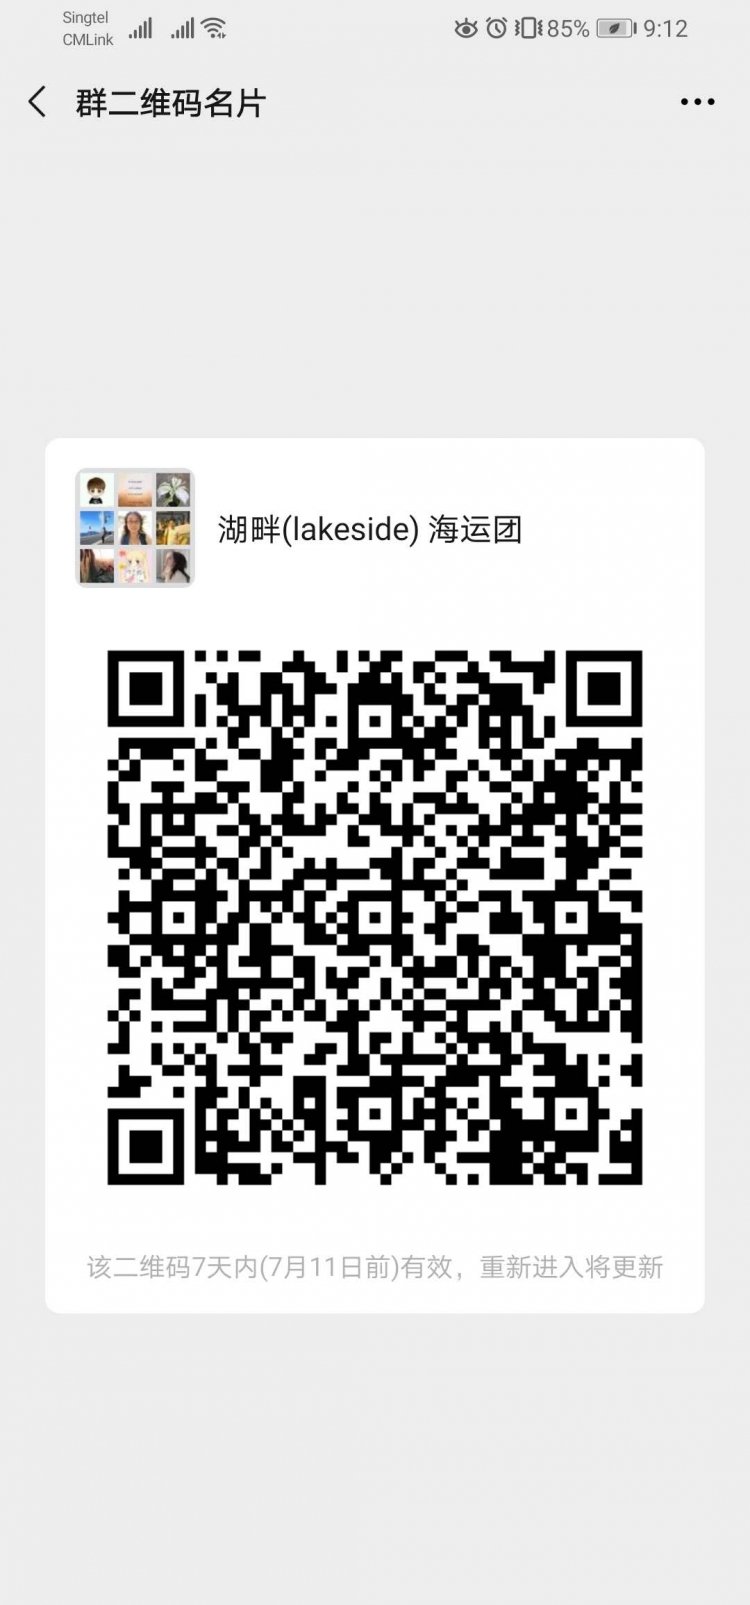 WeChat Image_20200704091244.jpg